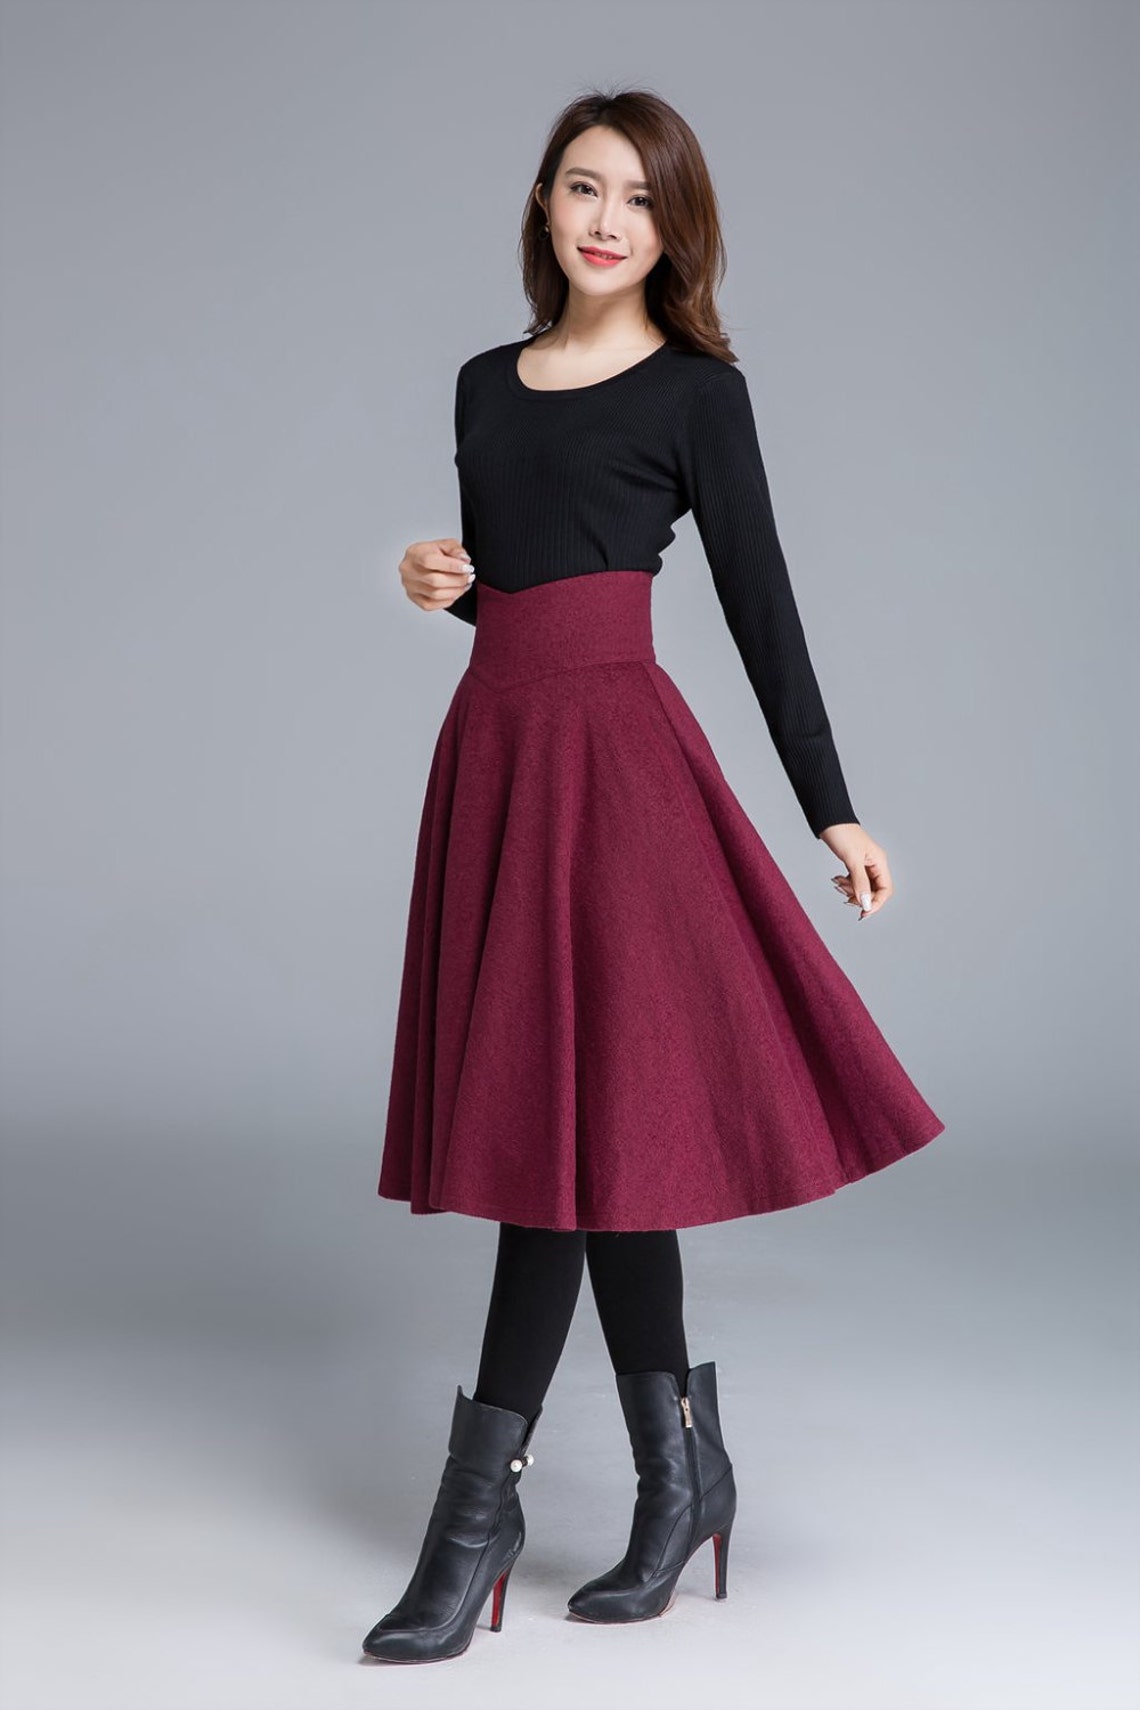 High waist Flared Midi skirt in red wool skirt Circle skirt | Etsy